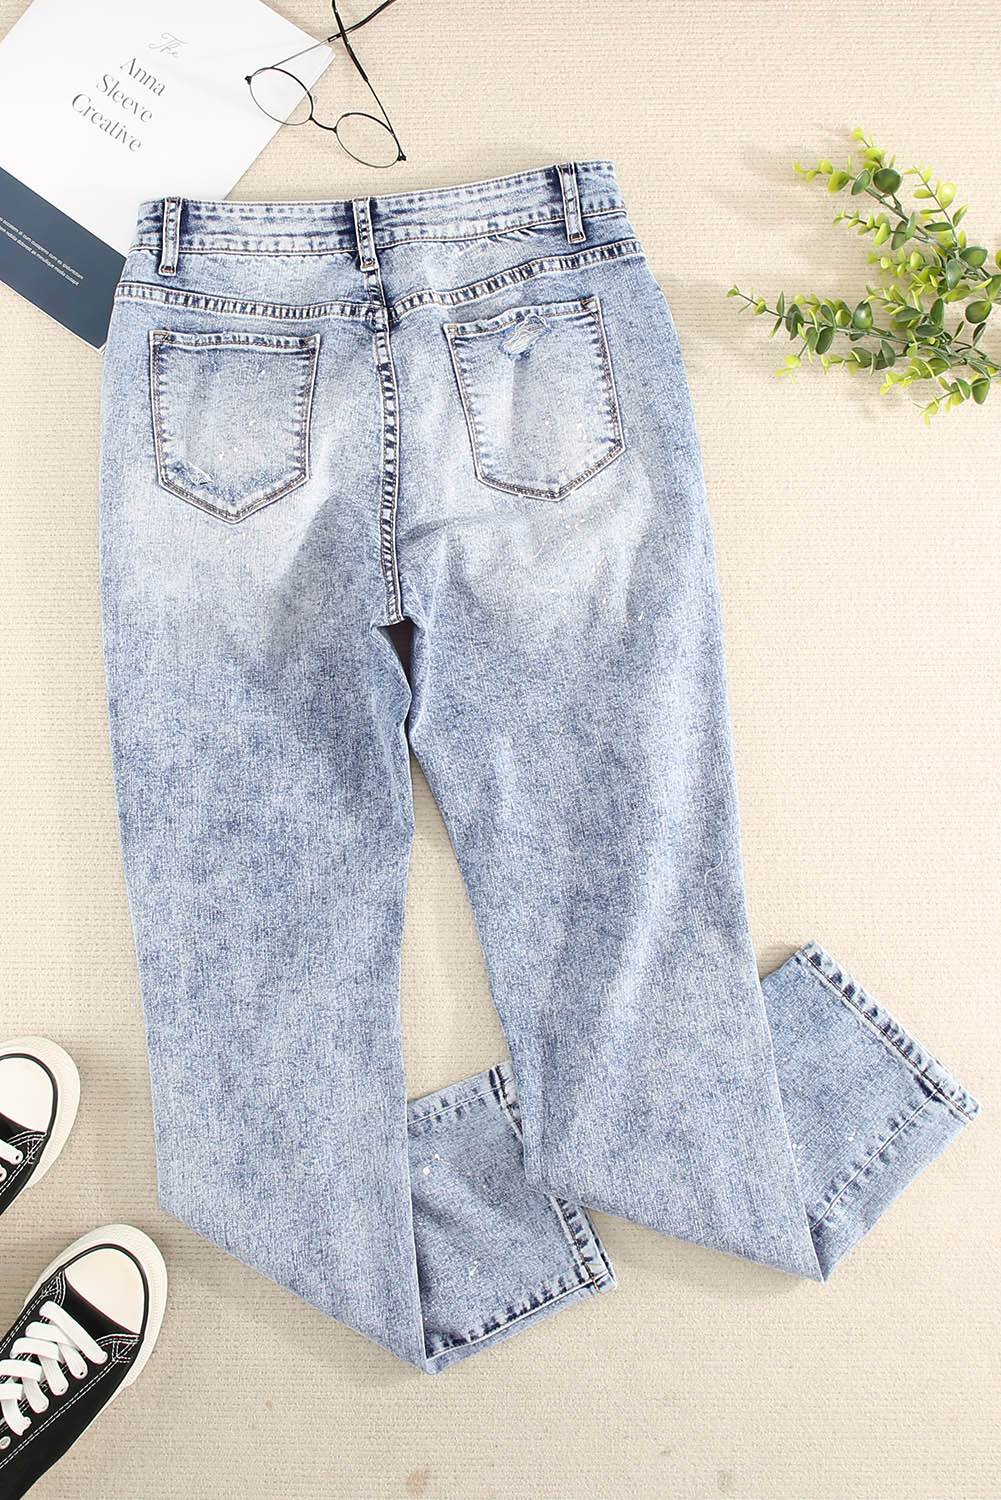 Splatter Distressed Acid Wash Jeans with Pockets